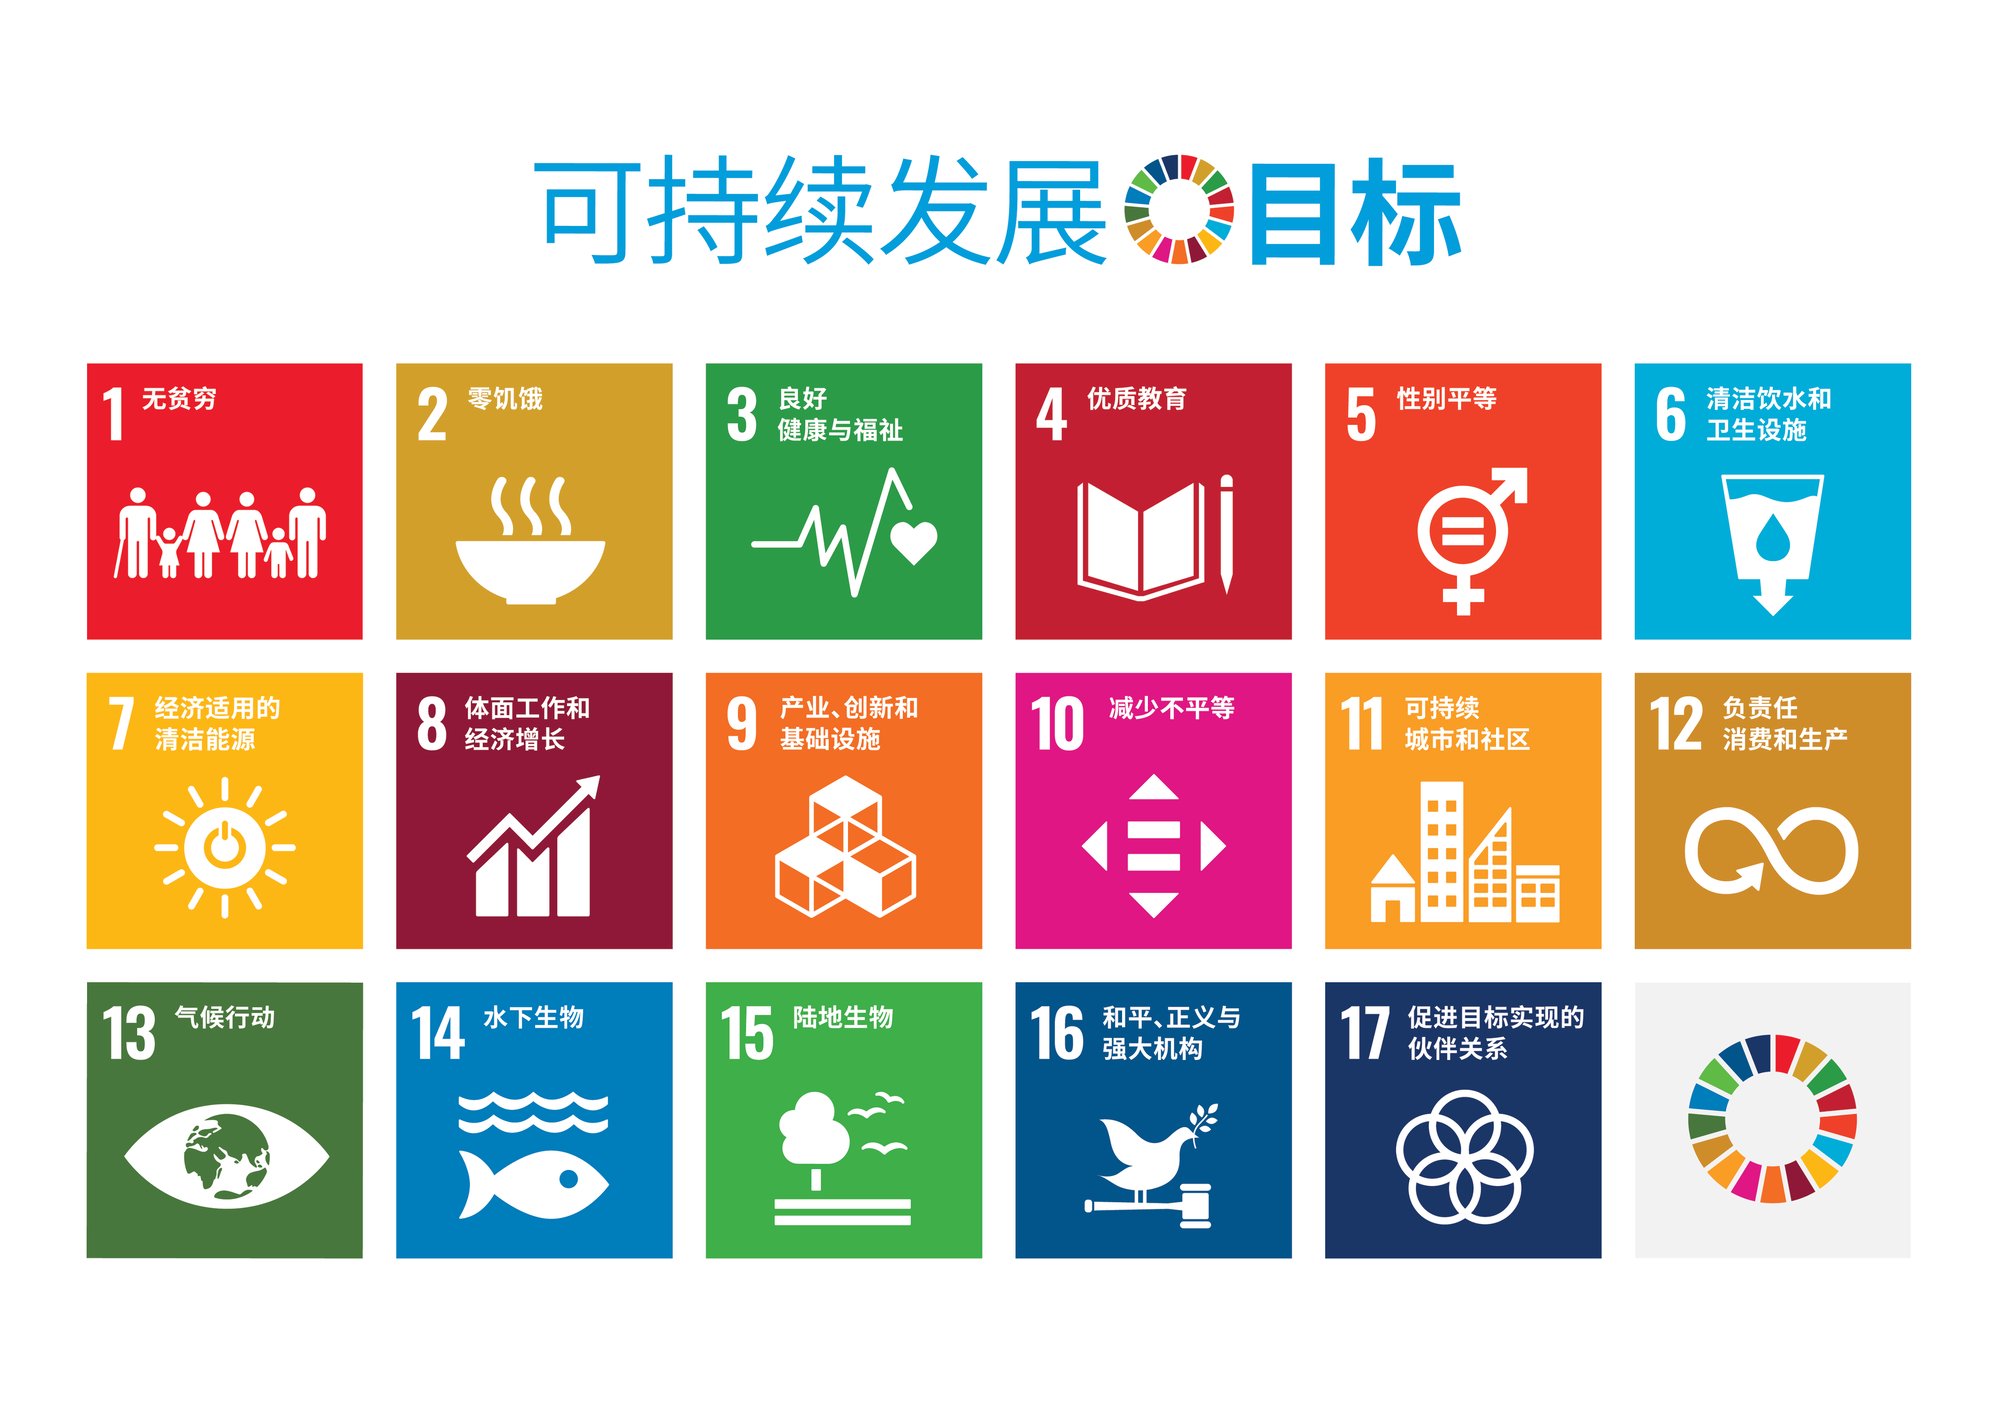 C SDG Poster 2019_without UN emblem_PRINT